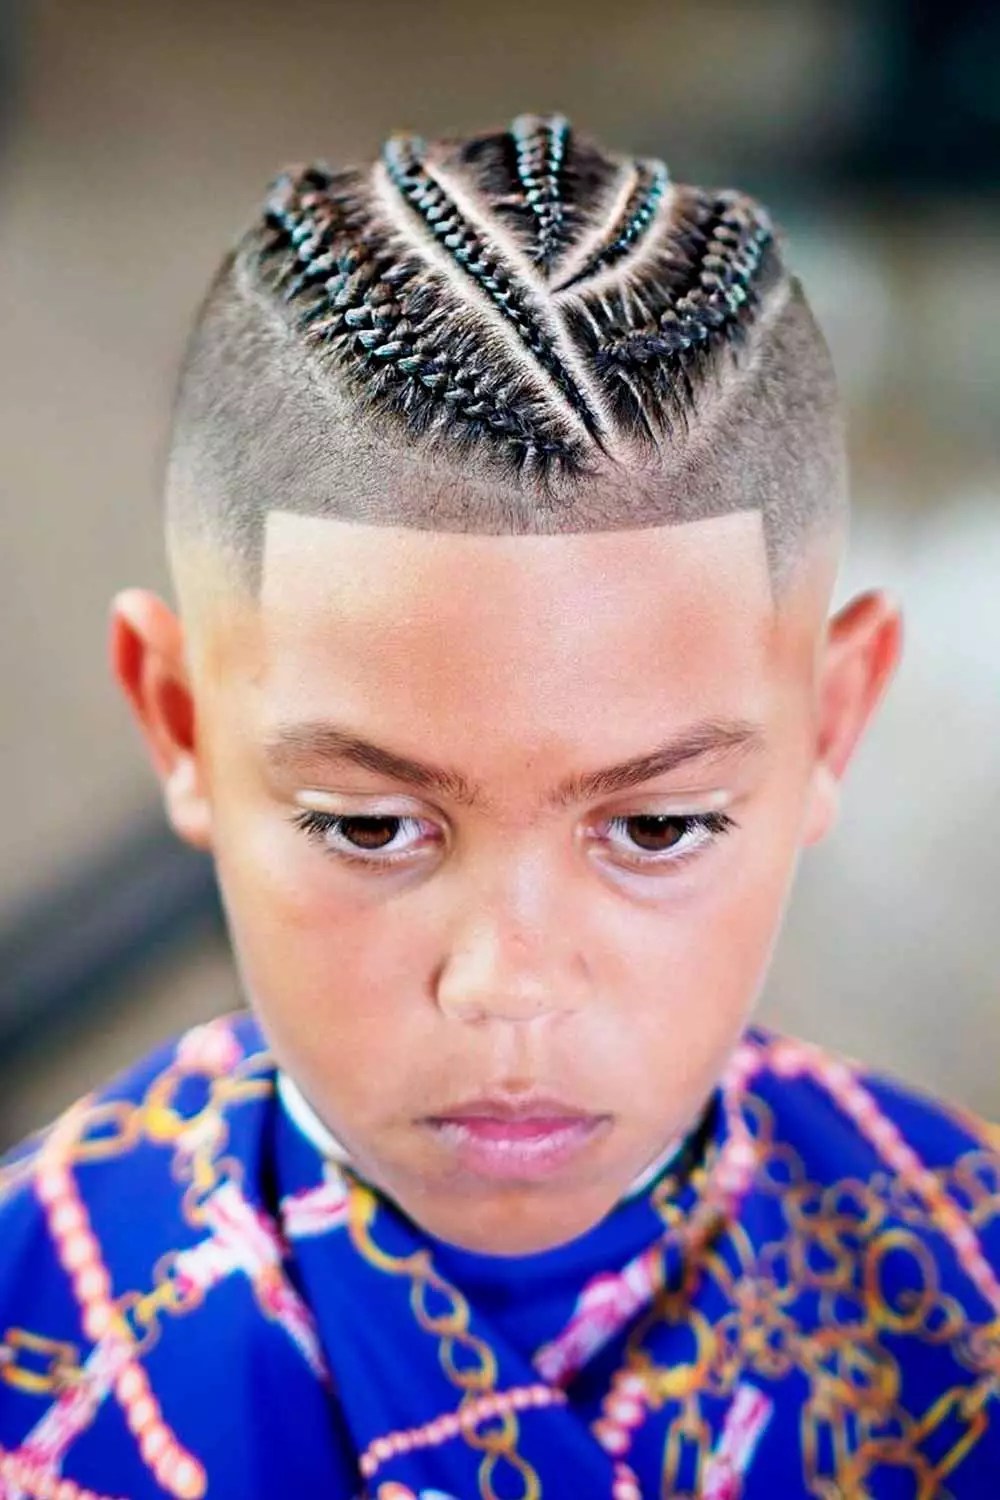 Cornrows For Boys #braidsforboys #boysbraids #braidshairstyles